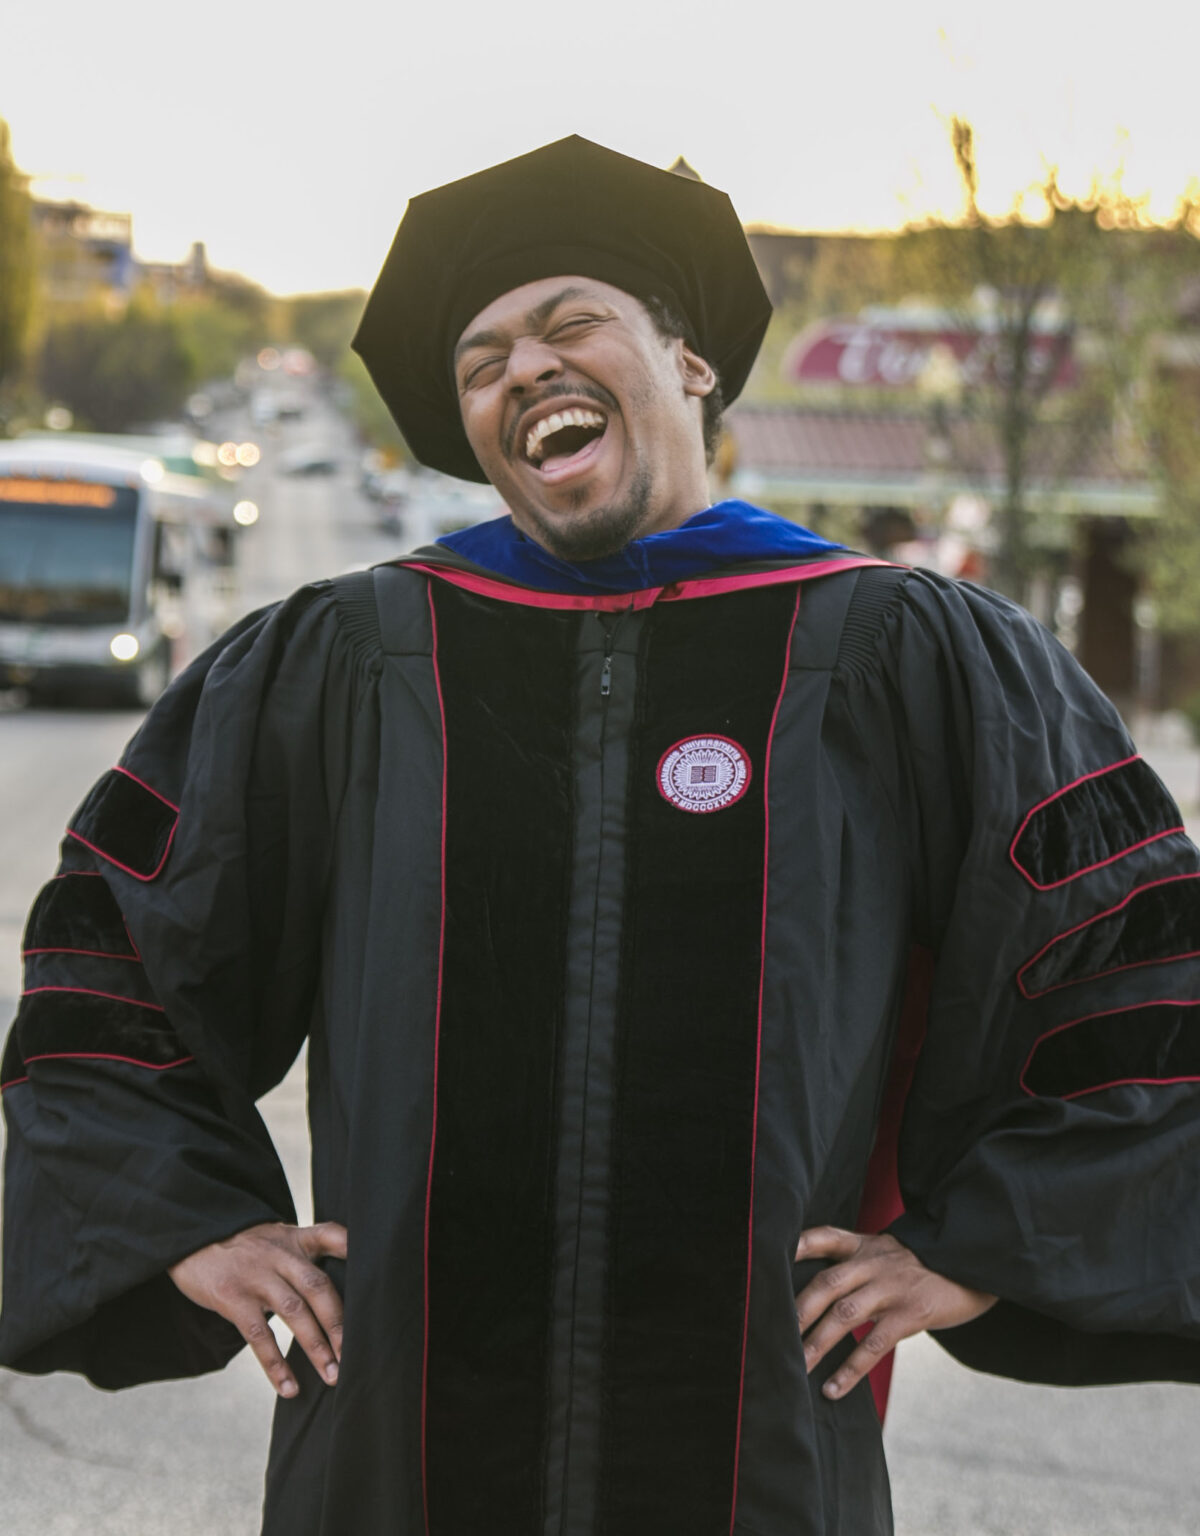 Black man smiling wearing PhD regalia.